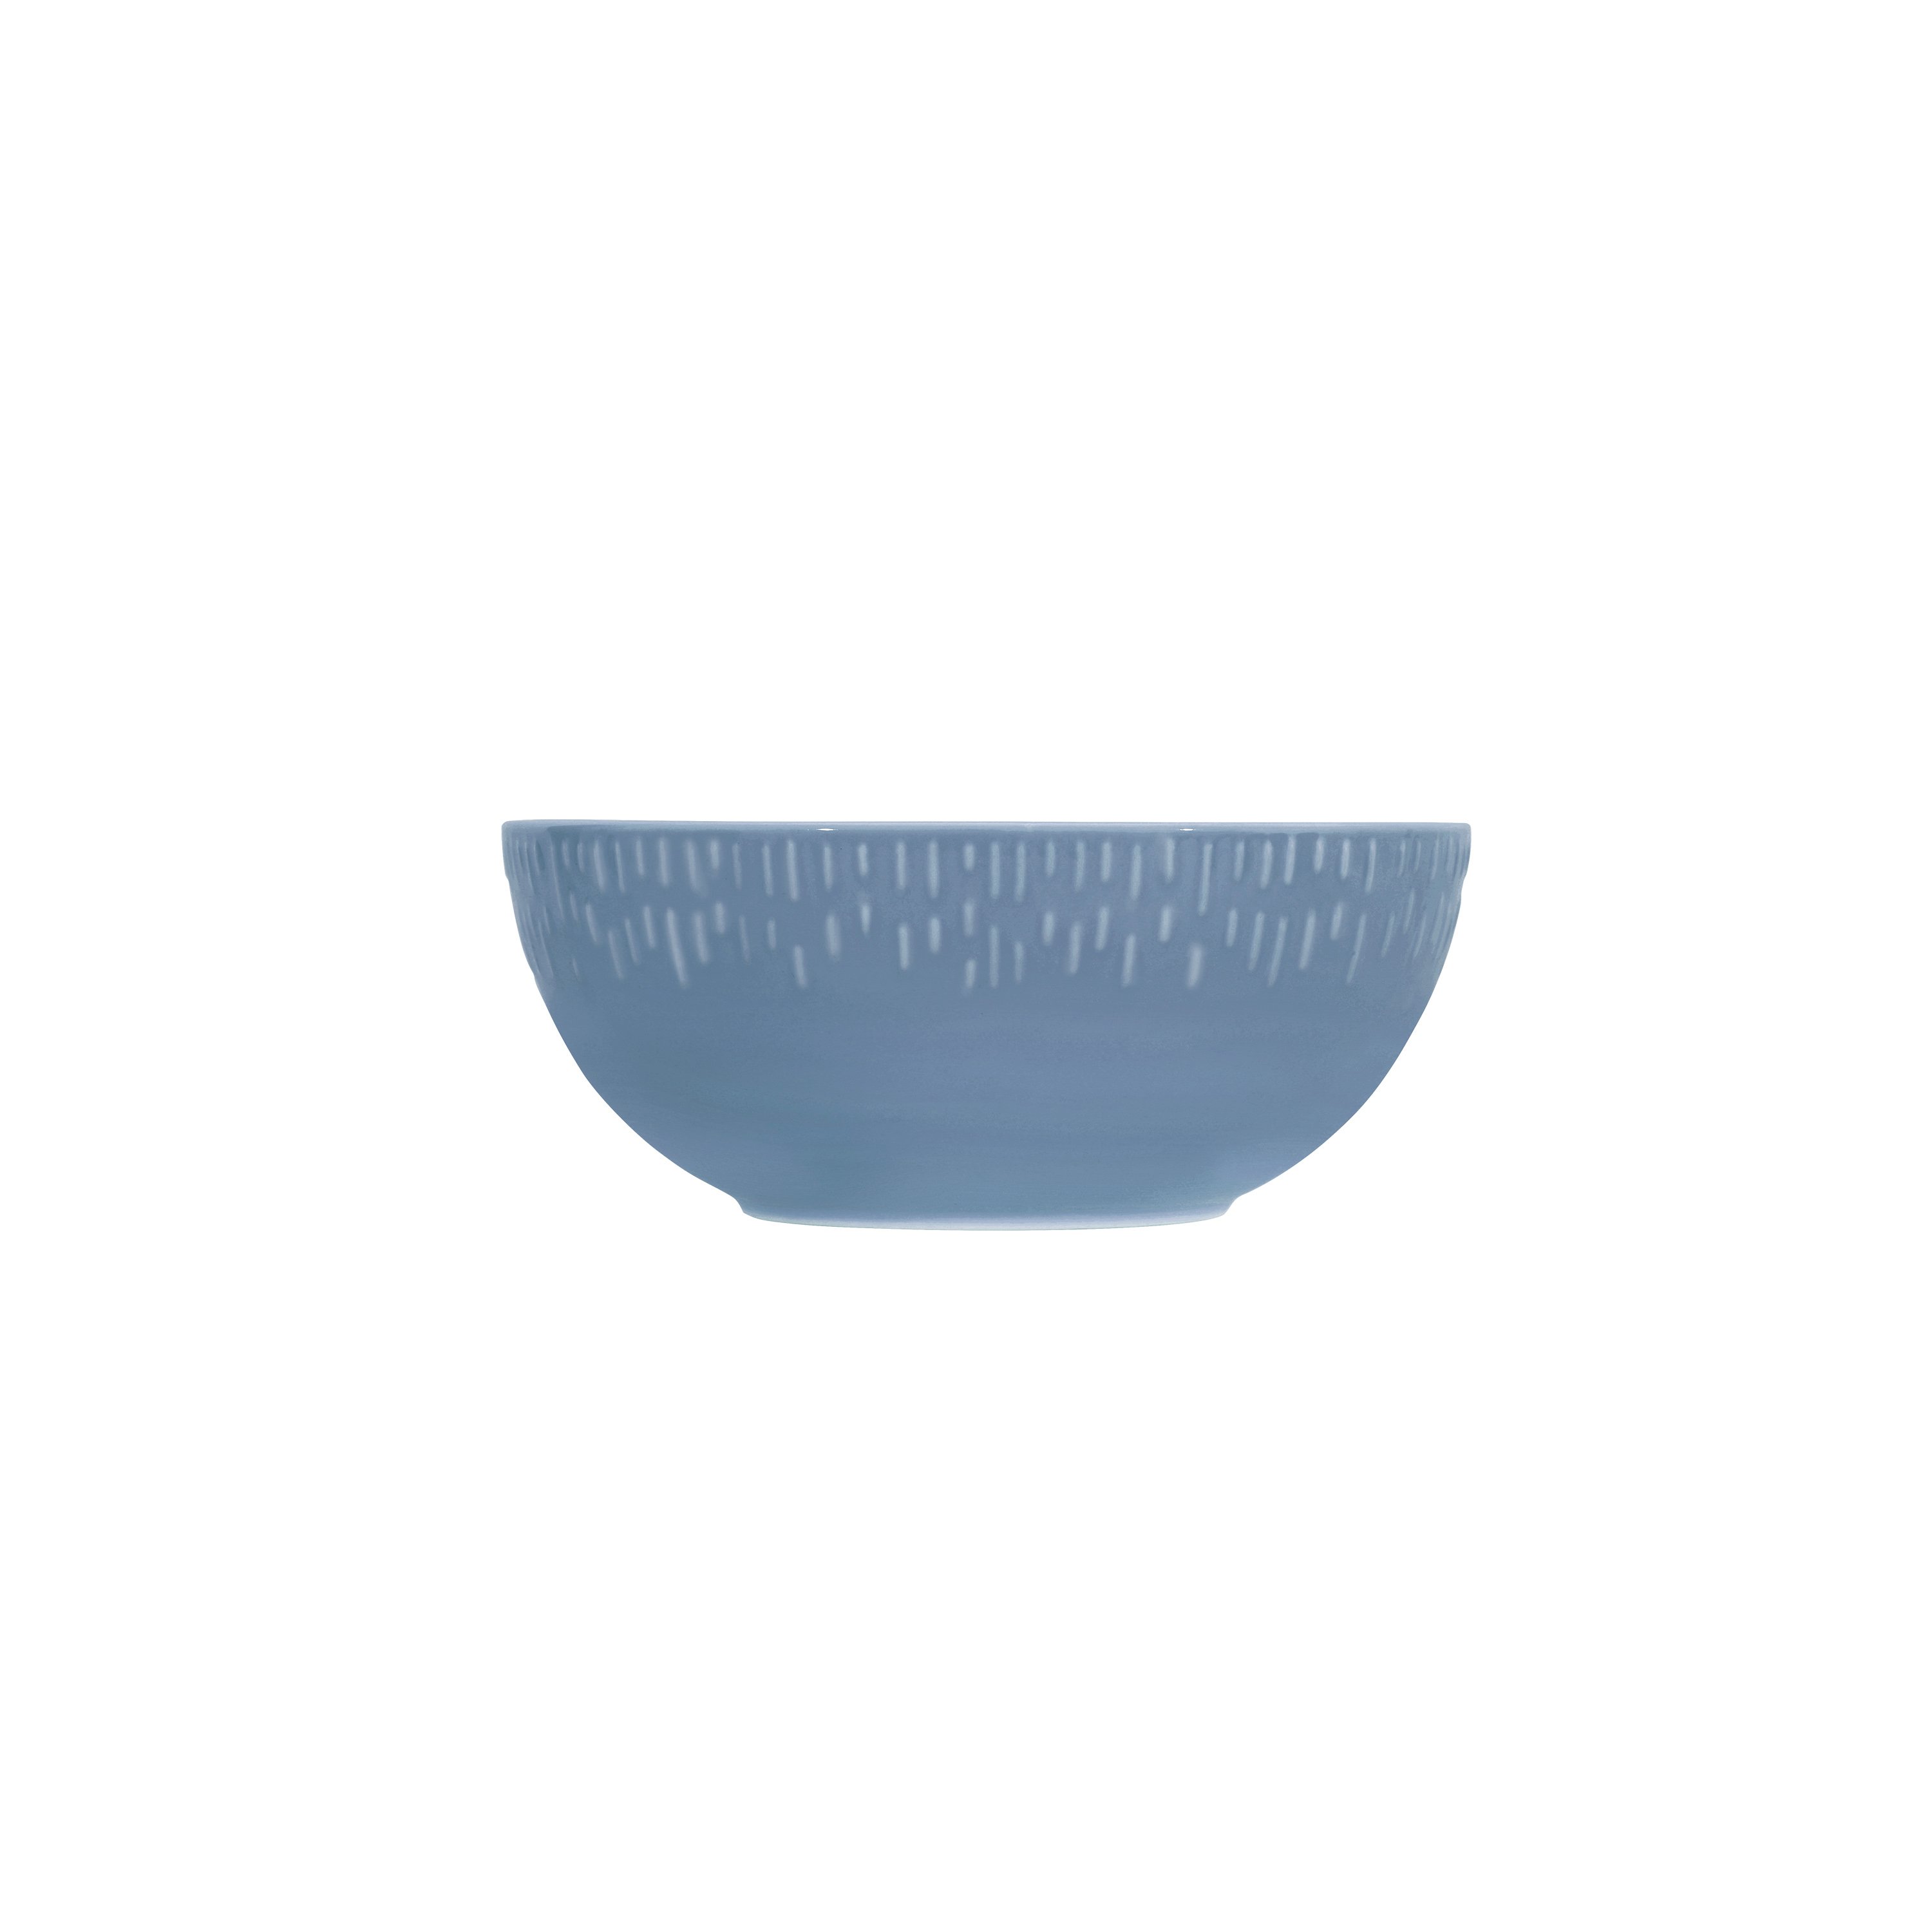 Aida - Life in Colour - Confetti - Blueberry saladbowl w/relief porcelain (13430) - Hjemme og kjøkken